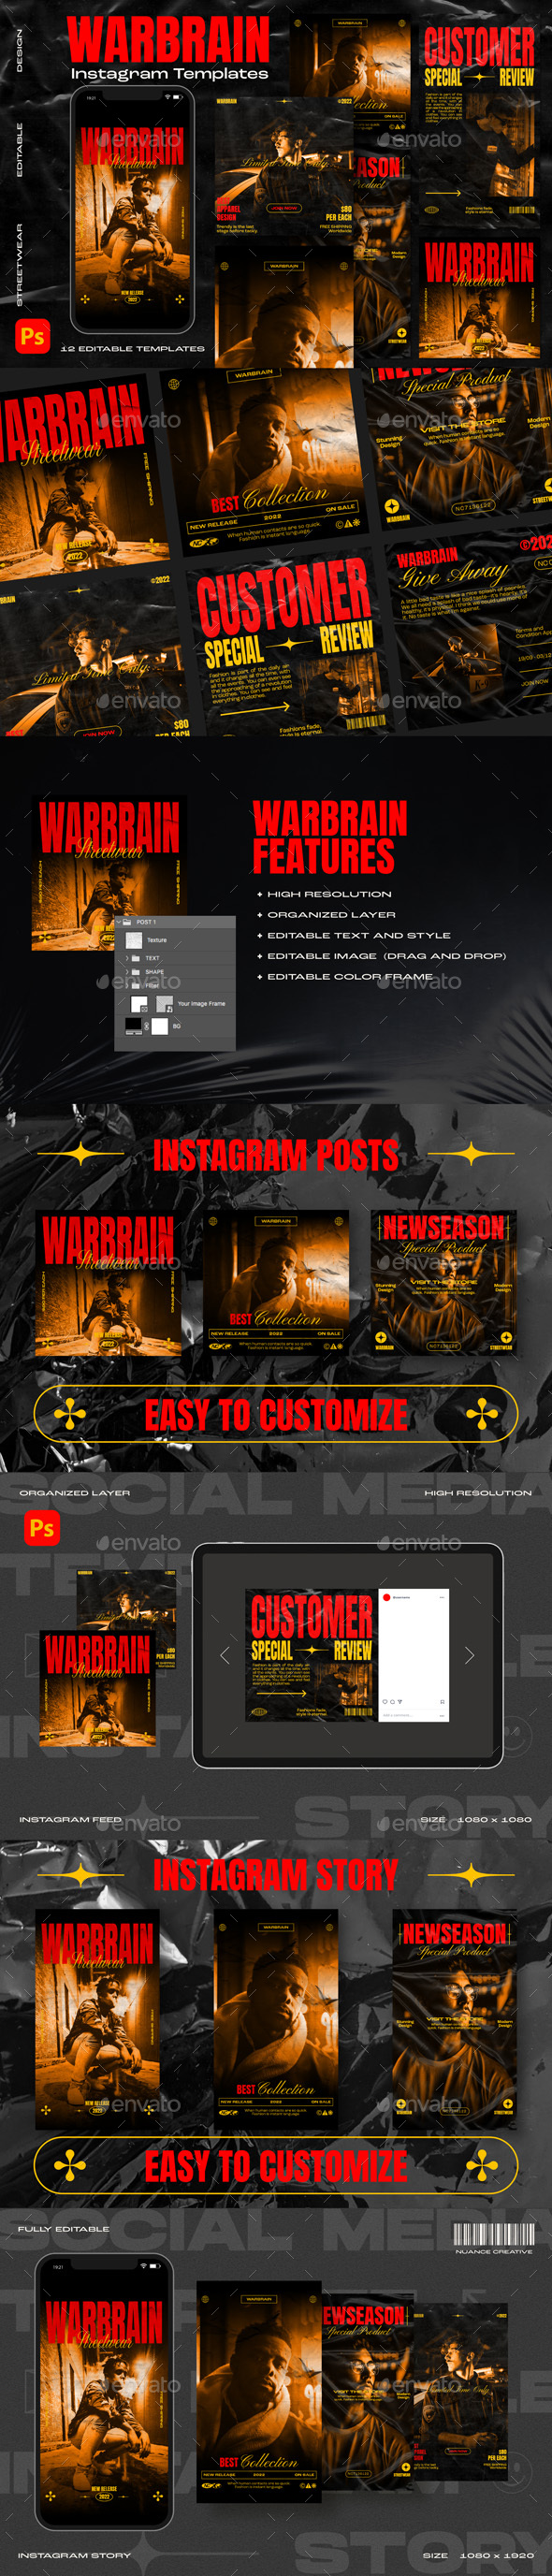 [DOWNLOAD]Warbrain Instagram Template Design